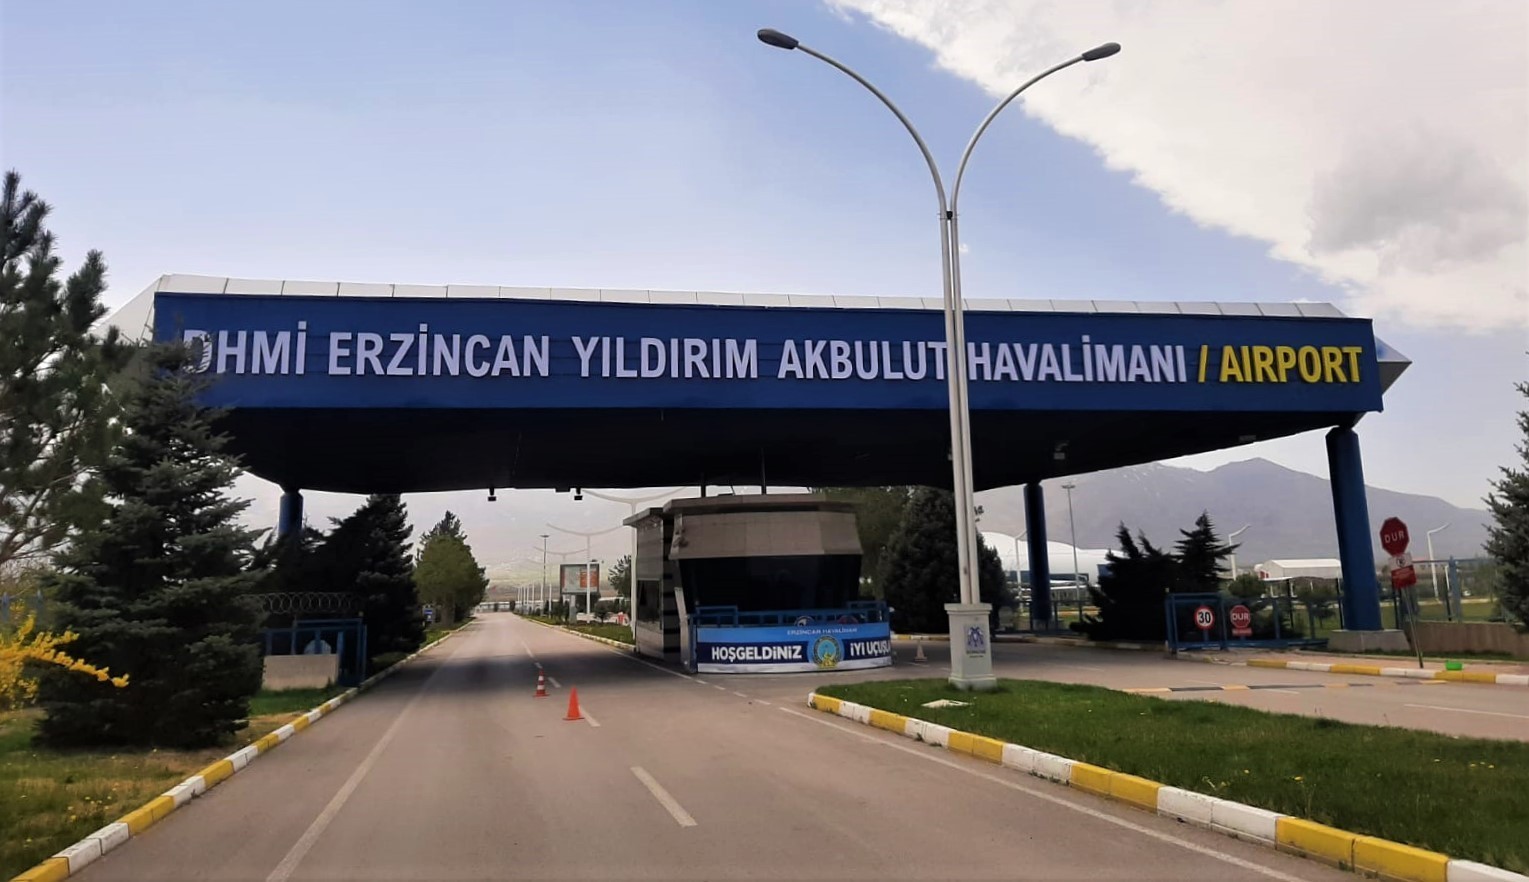 Erzincan’da uçak seferlerinin düşürülmesi tepki çekti #erzincan